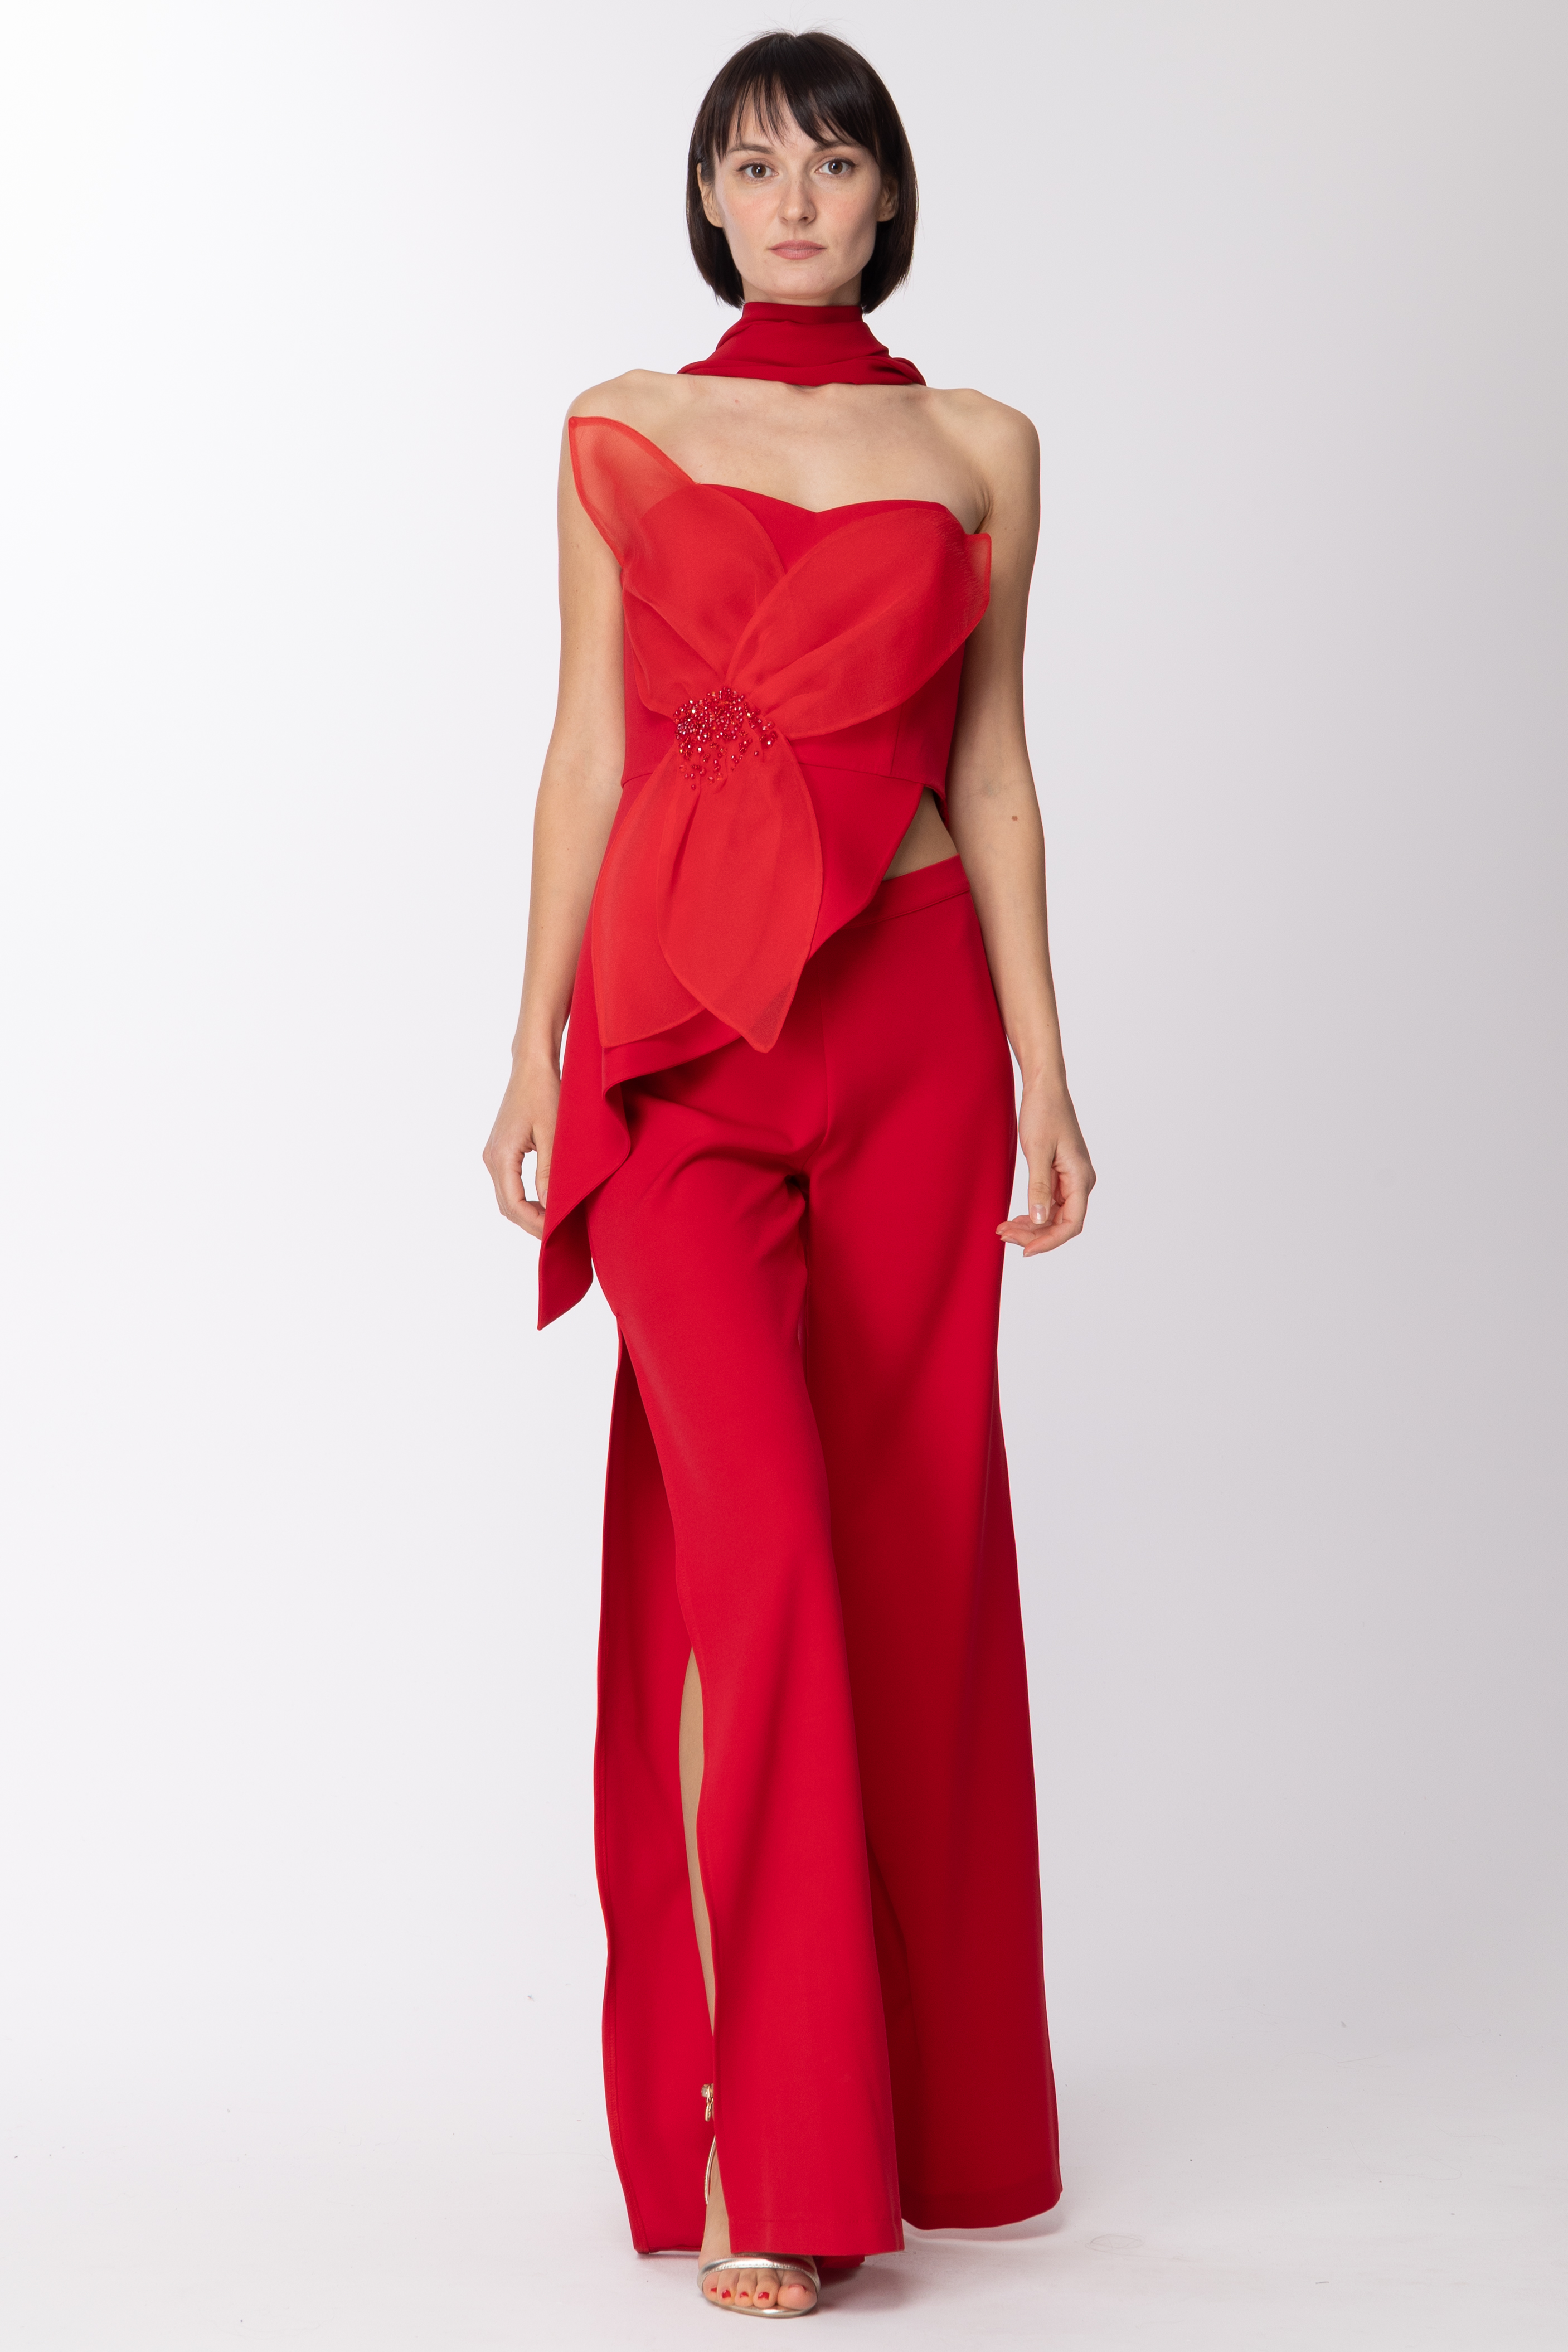 Anteprima: Fabiana Ferri Completo top bustier + pantaloni con spacchi Rosso